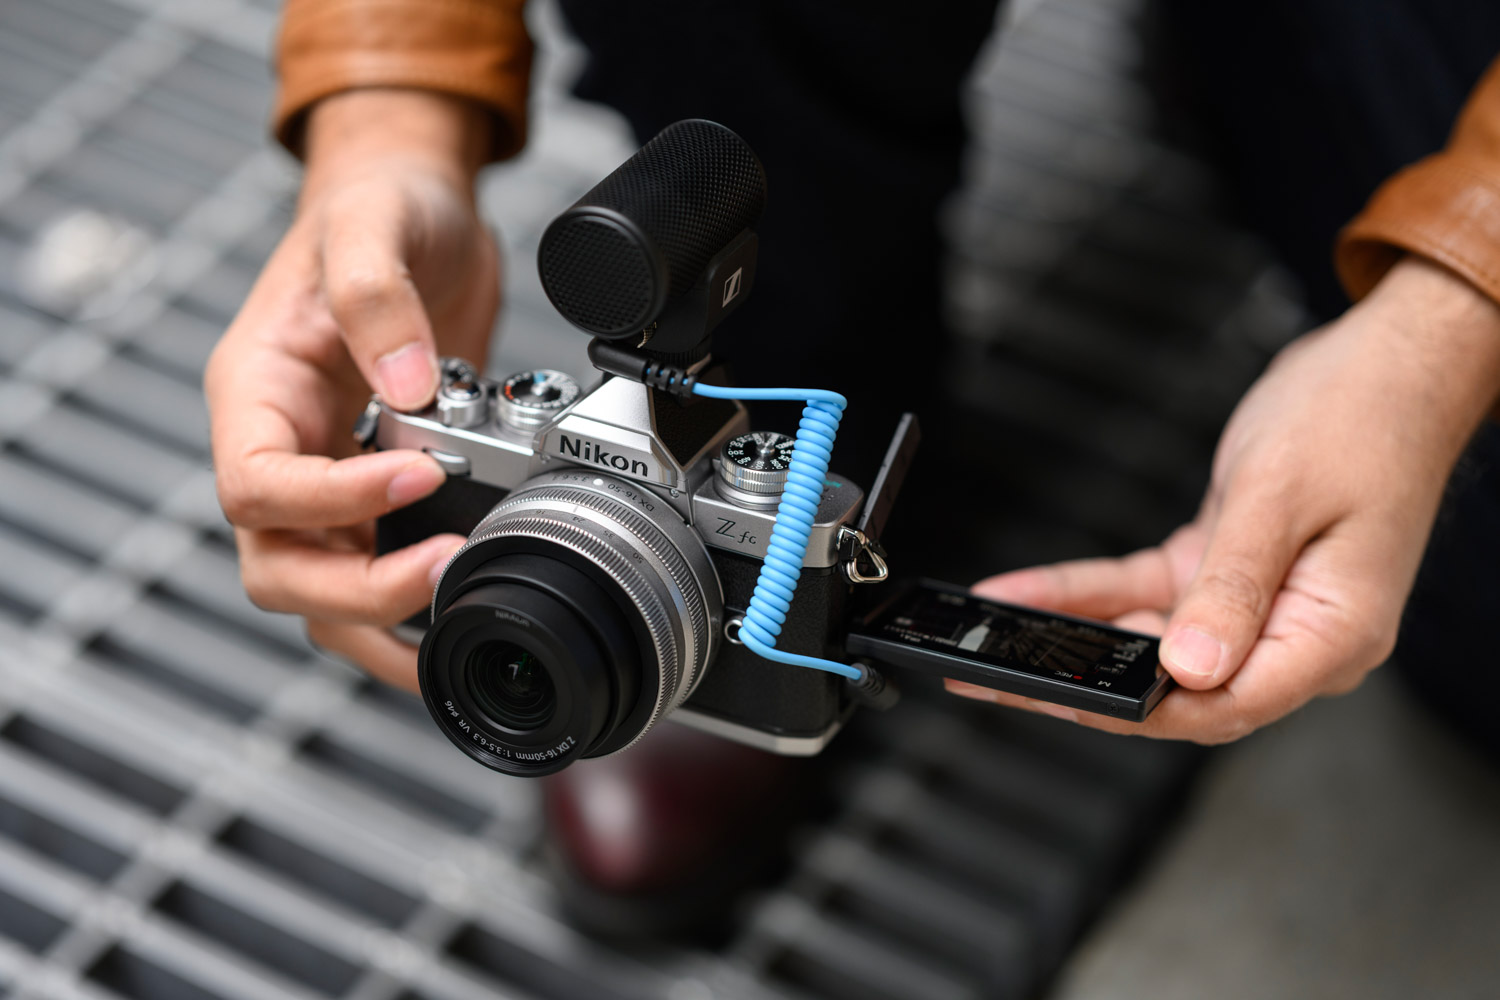 Nikon ra mắt máy ảnh Z fc với phong cách cổ điển với cảm biến crop 20.9 MP